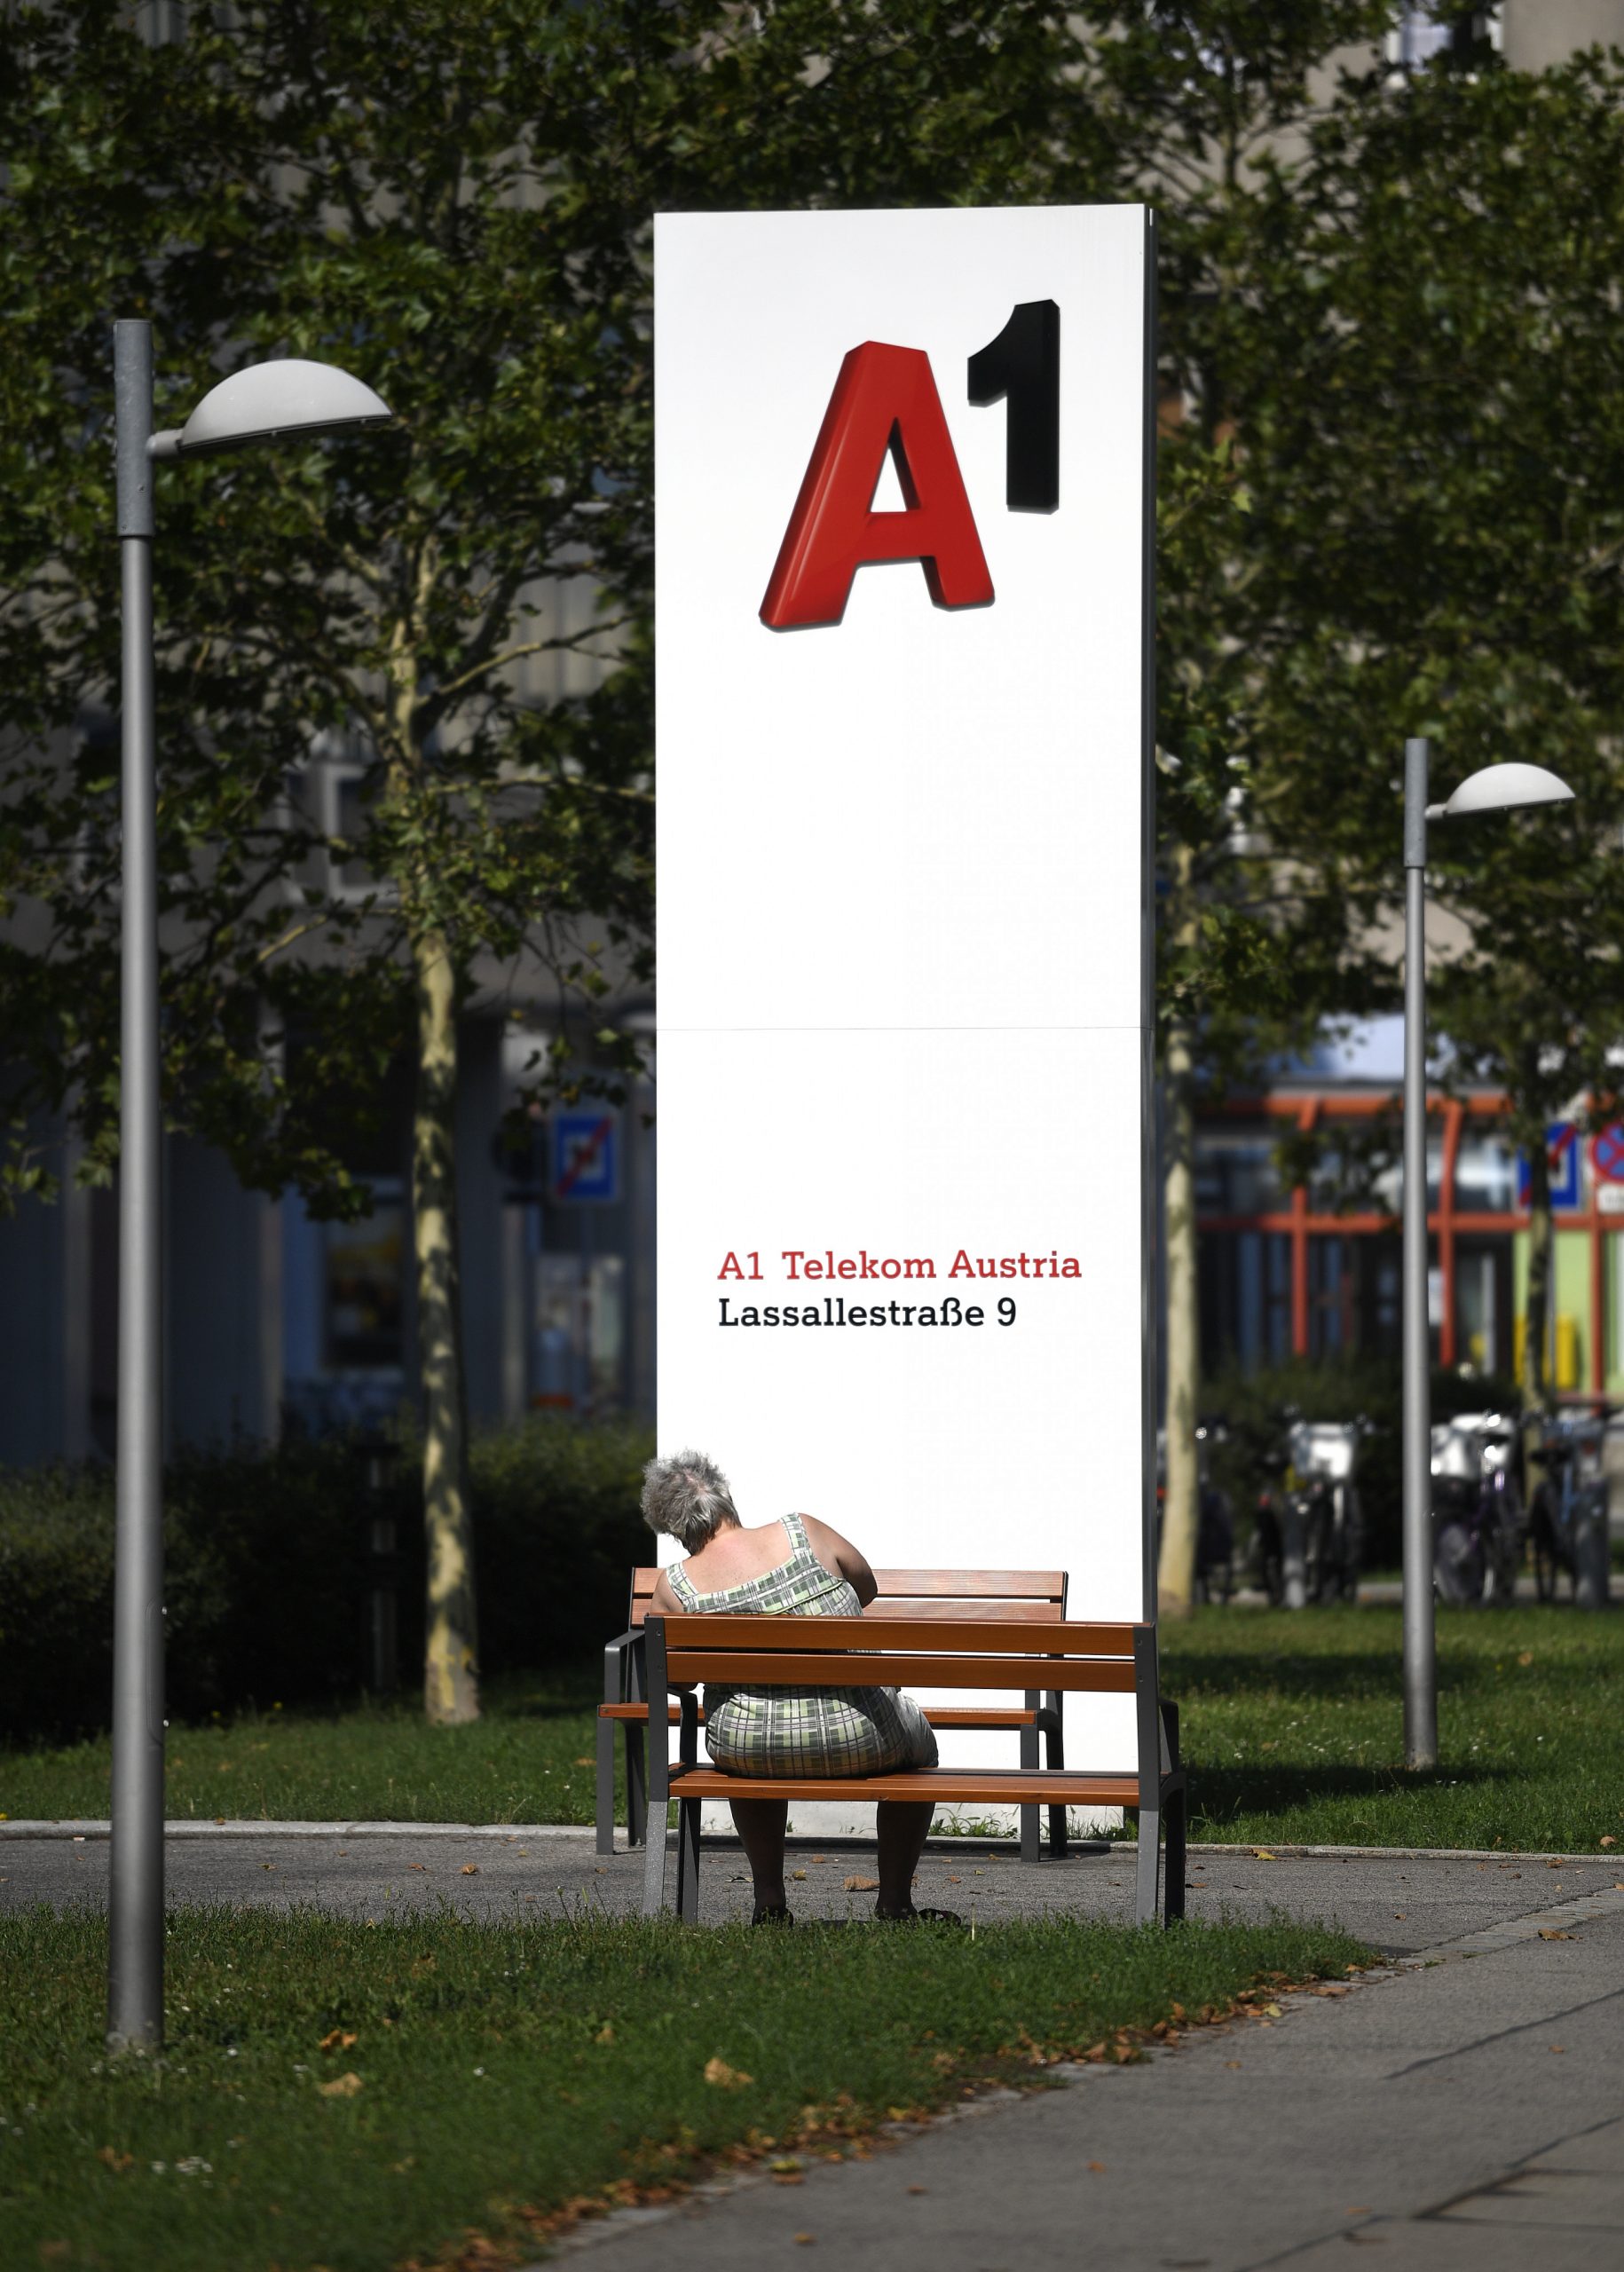 stellenabbau: betriebsrat fürchtet entlassungen bei a1 telekom austria